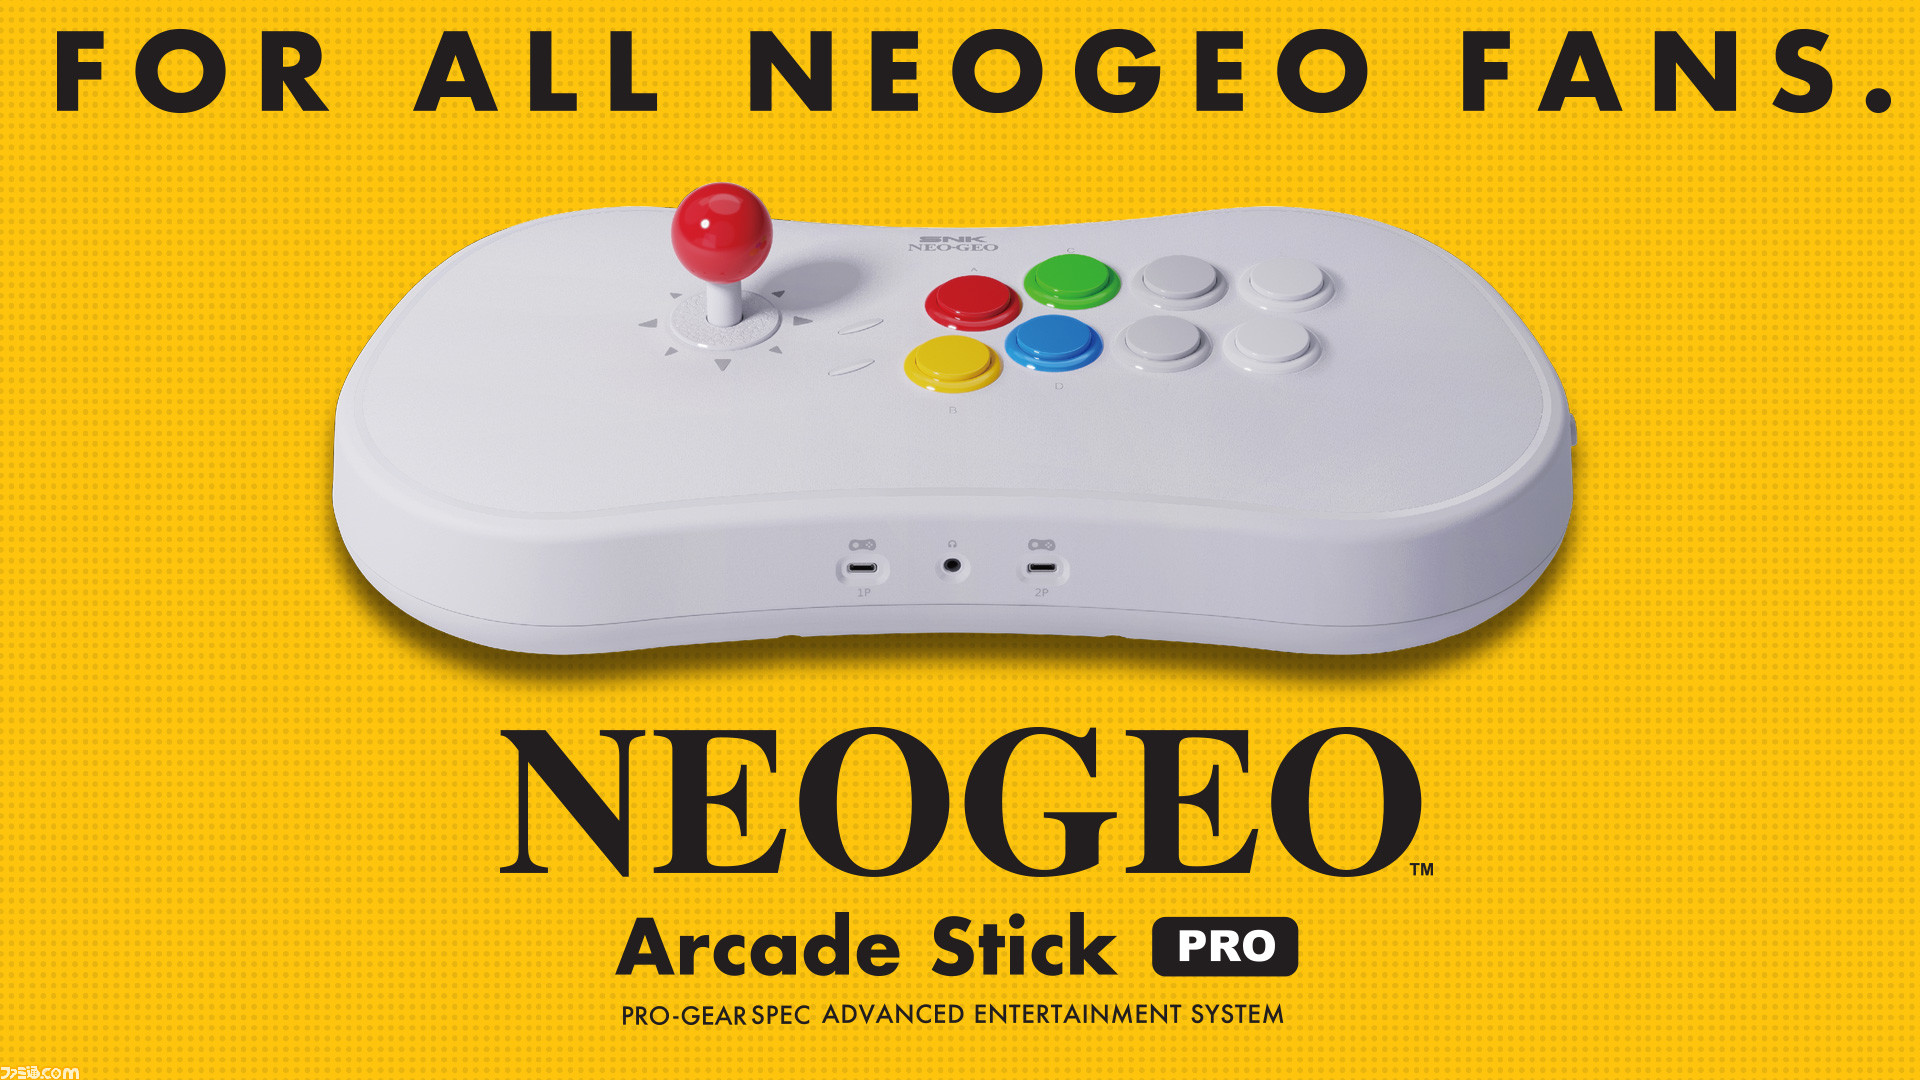 NEOGEOの新ハード“NEOGEO Arcade Stick Pro”が発売決定！ 選りすぐりの格闘ゲーム20作品を収録したユニークな アーケードスティックに!!